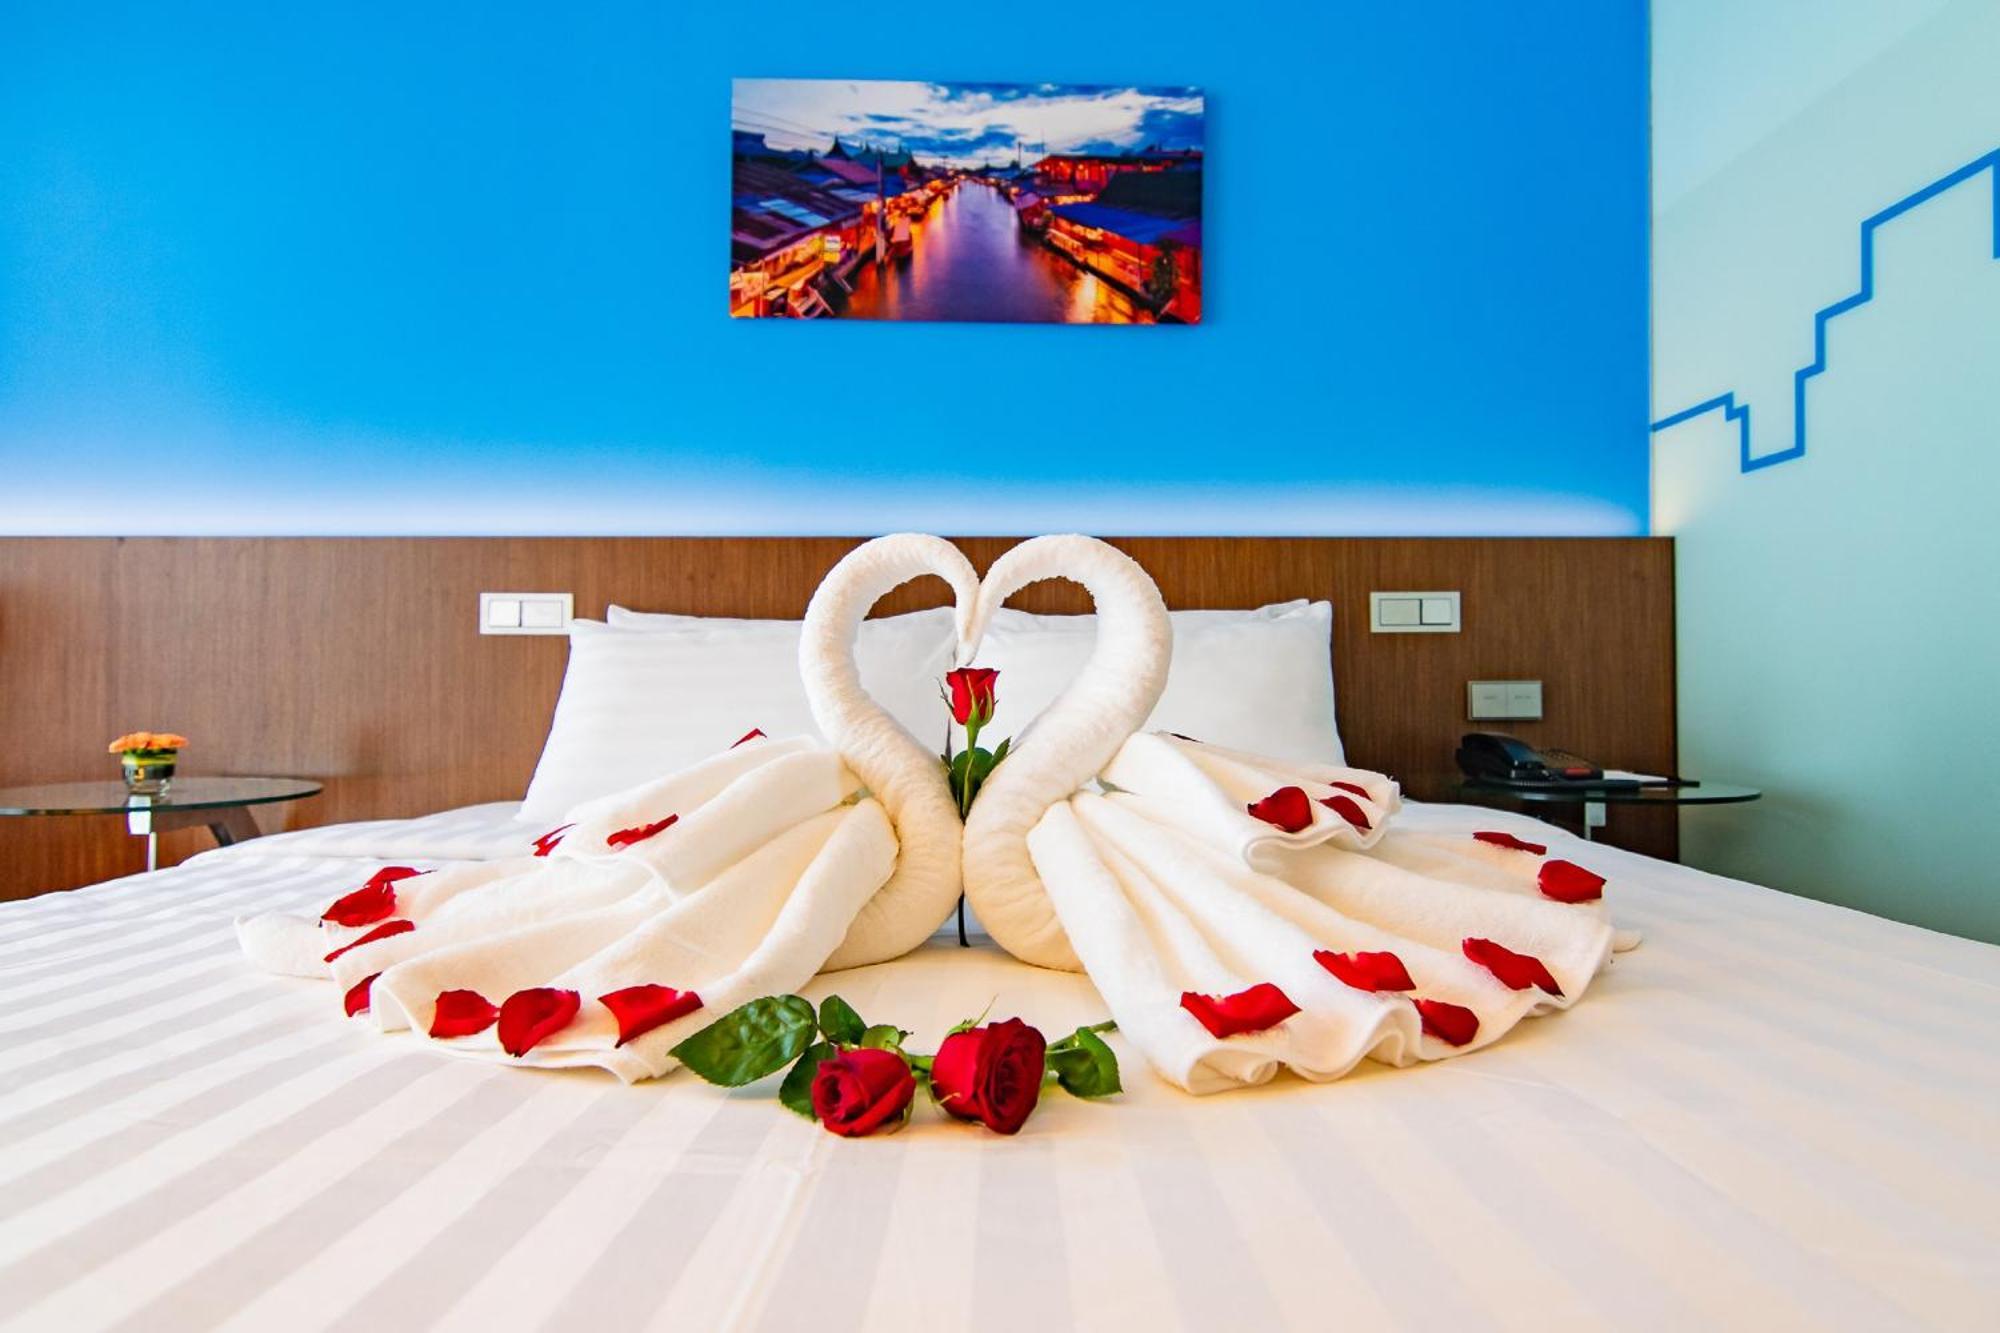 โรงแรมแกลเลอเรีย10 สุขุมวิท กรุงเทพฯ บายคอมพาสฮอสปิทาลิตี้ กรุงเทพมหานคร ภายนอก รูปภาพ